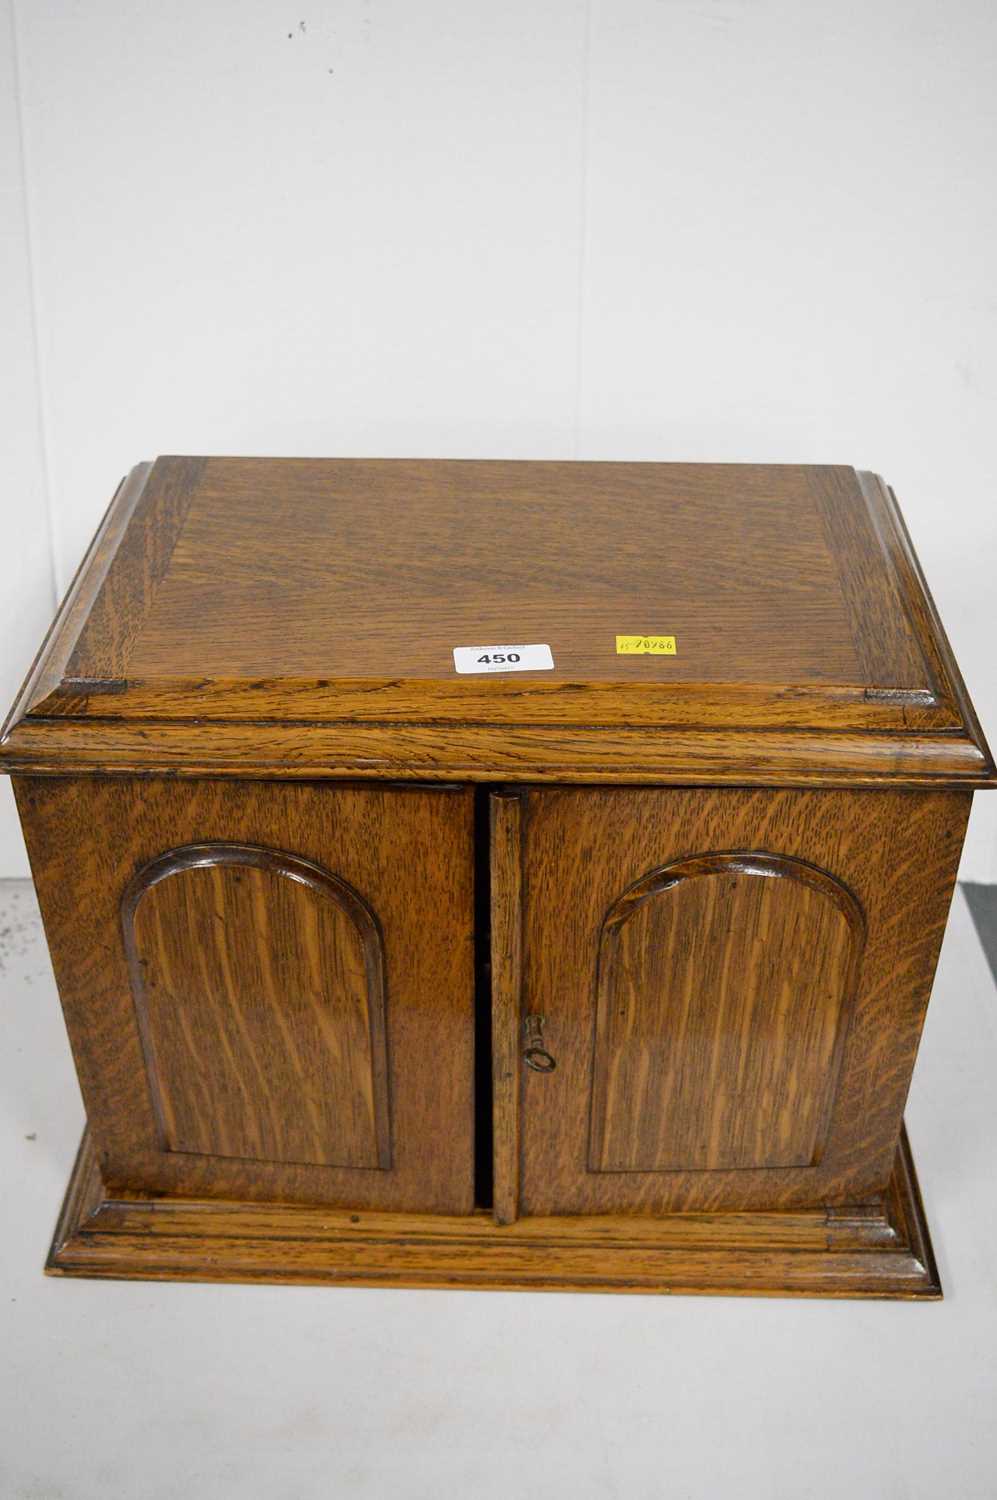 Lot 450 - Early 20th C oak smoker's cabinet.